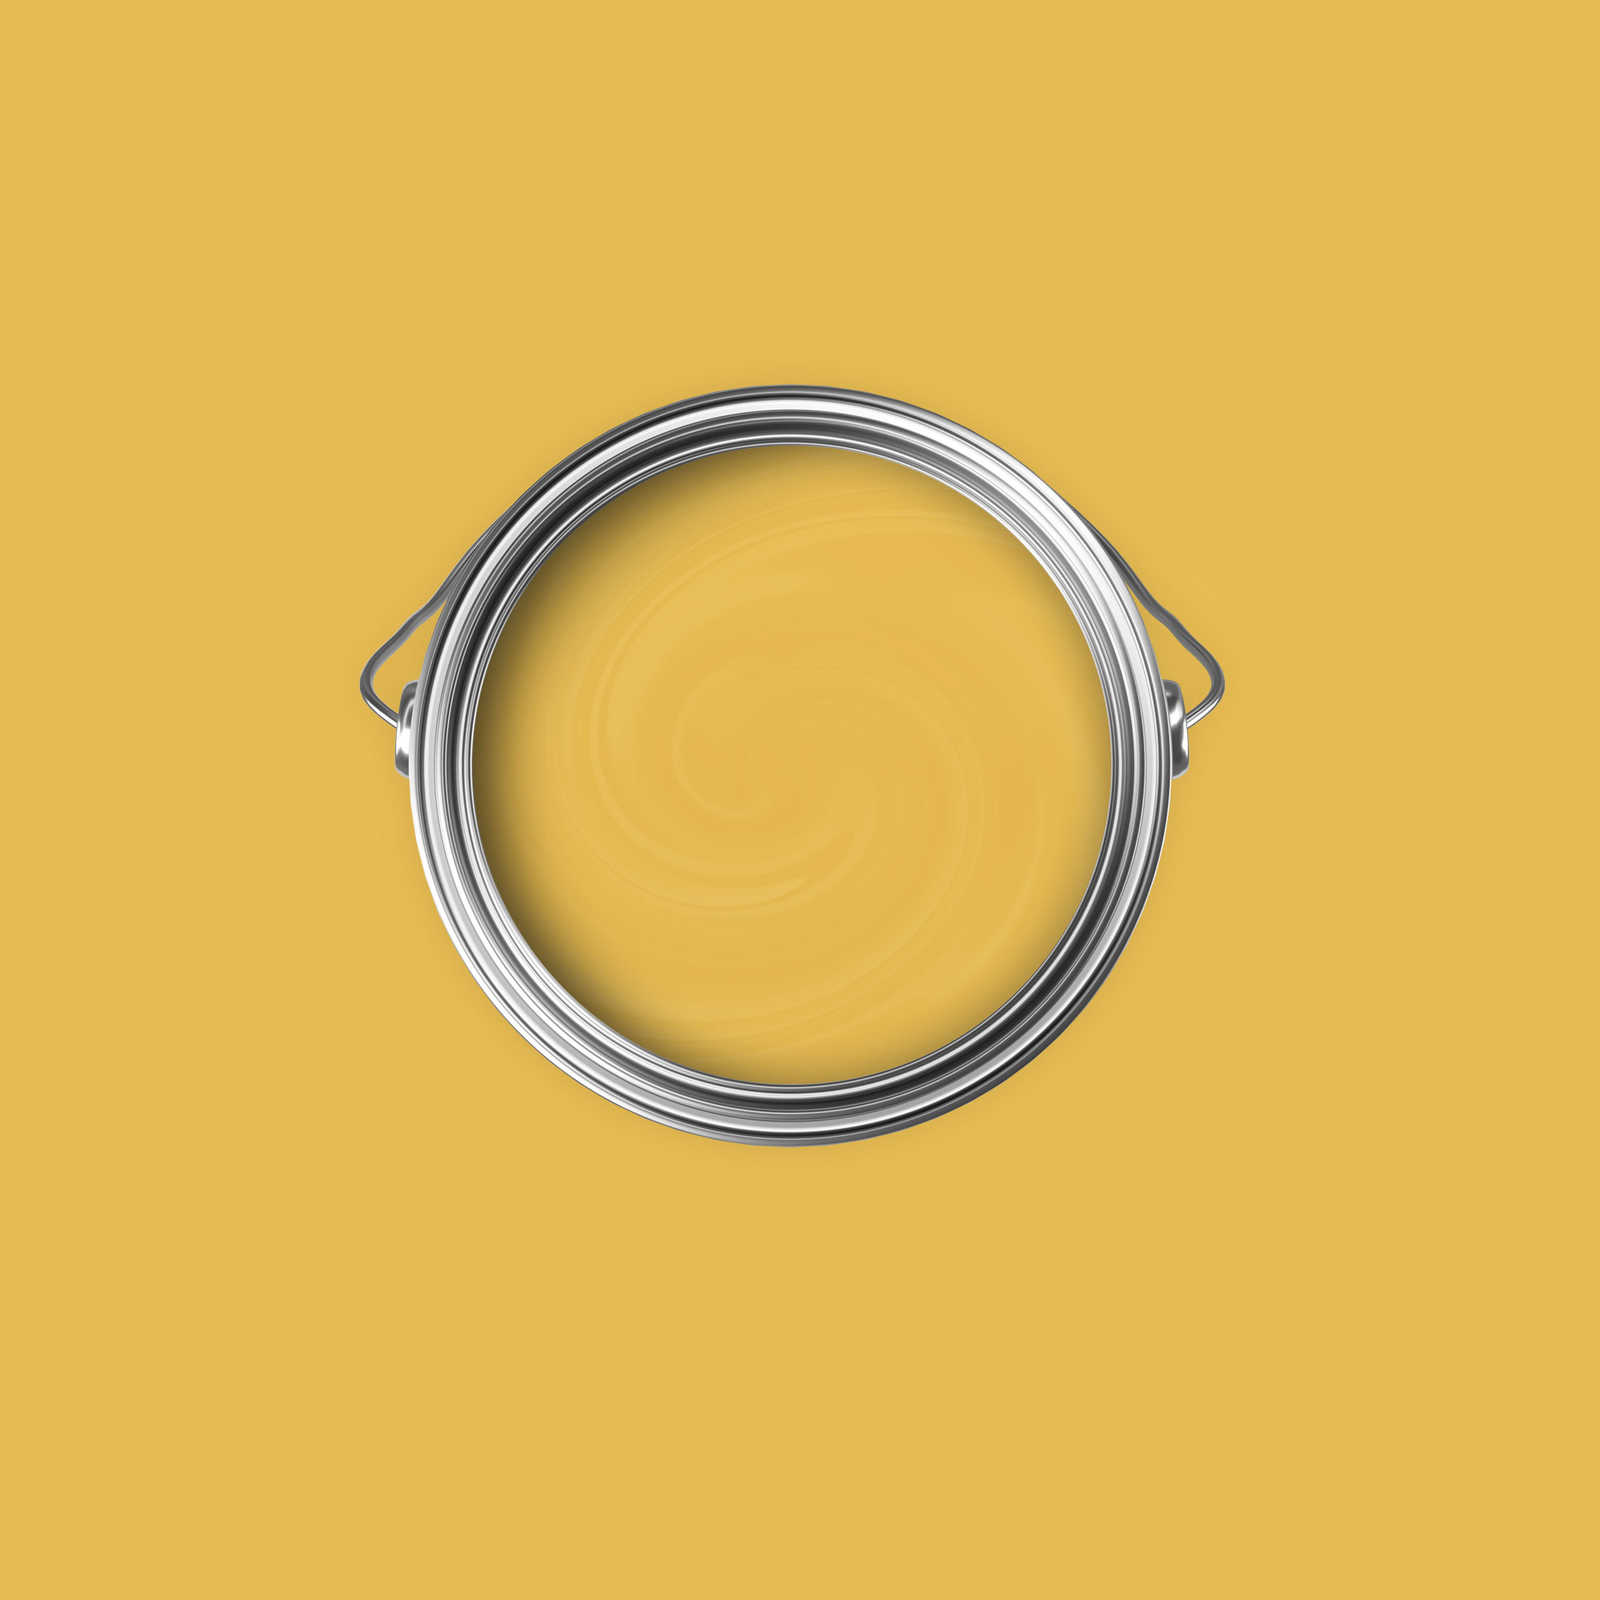             Premium Muurverf Actief Vanille »Juicy Yellow« NW803 – 2,5 Liter
        